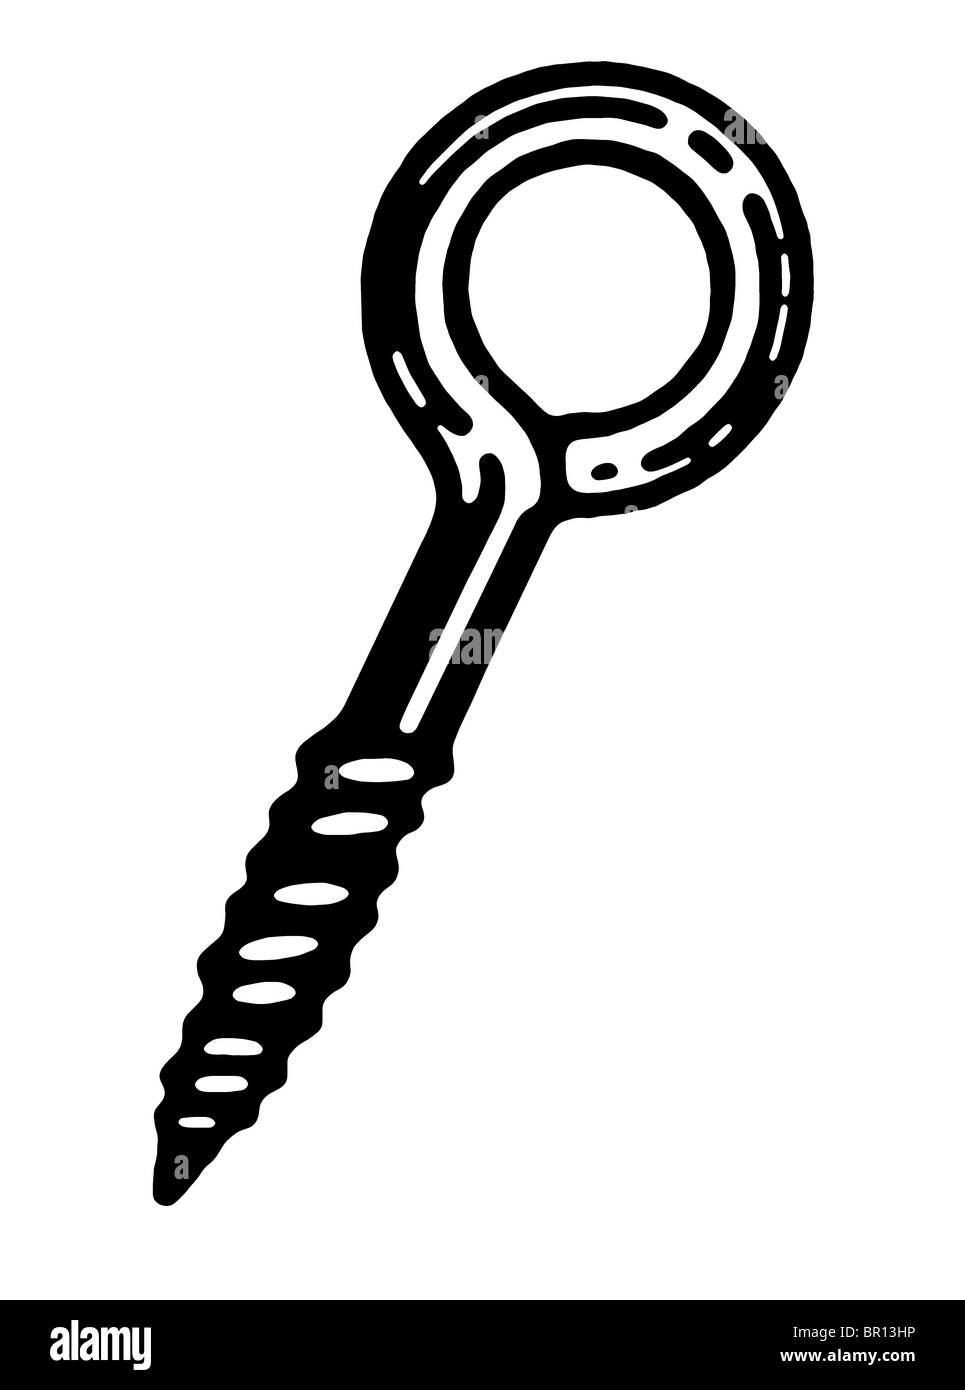 Eine schwarz-weiß Version einer Schlüsselloch-Schraube Stockfoto